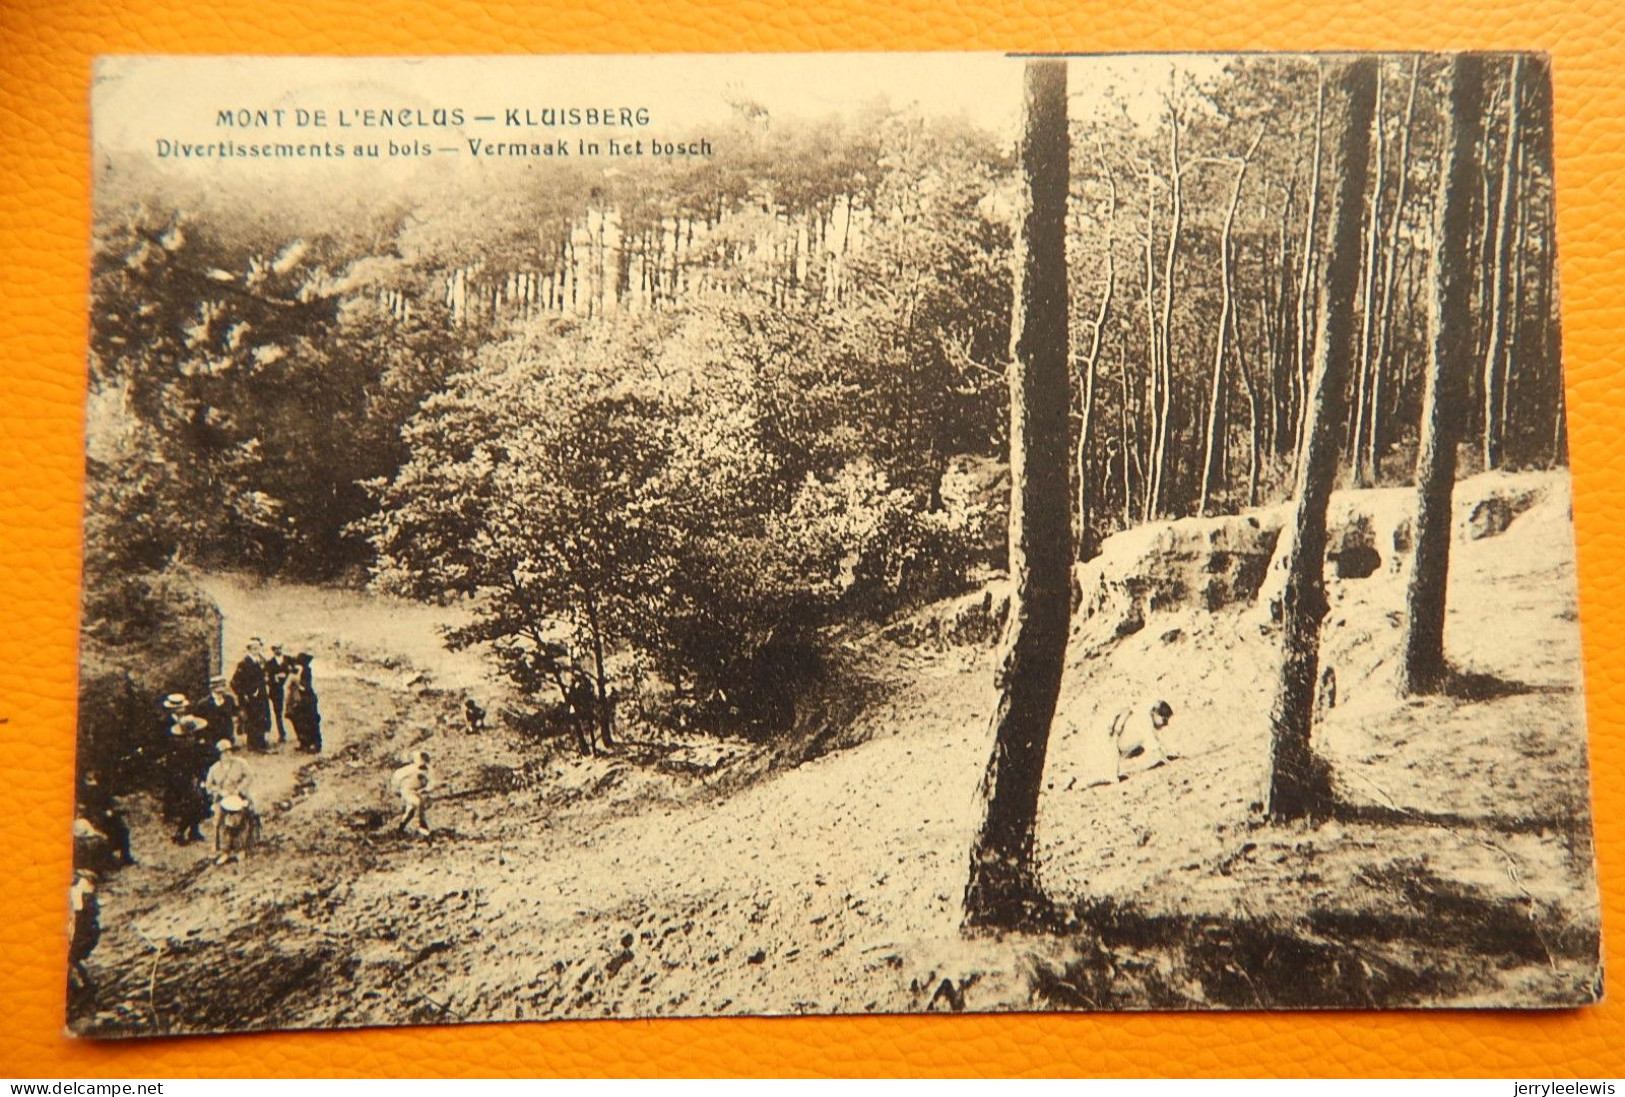 MONT-de-l'ENCLUS  -  KLUISBERG  -  Divertissements Au Bois  - Vermaak In Het Bos - Mont-de-l'Enclus